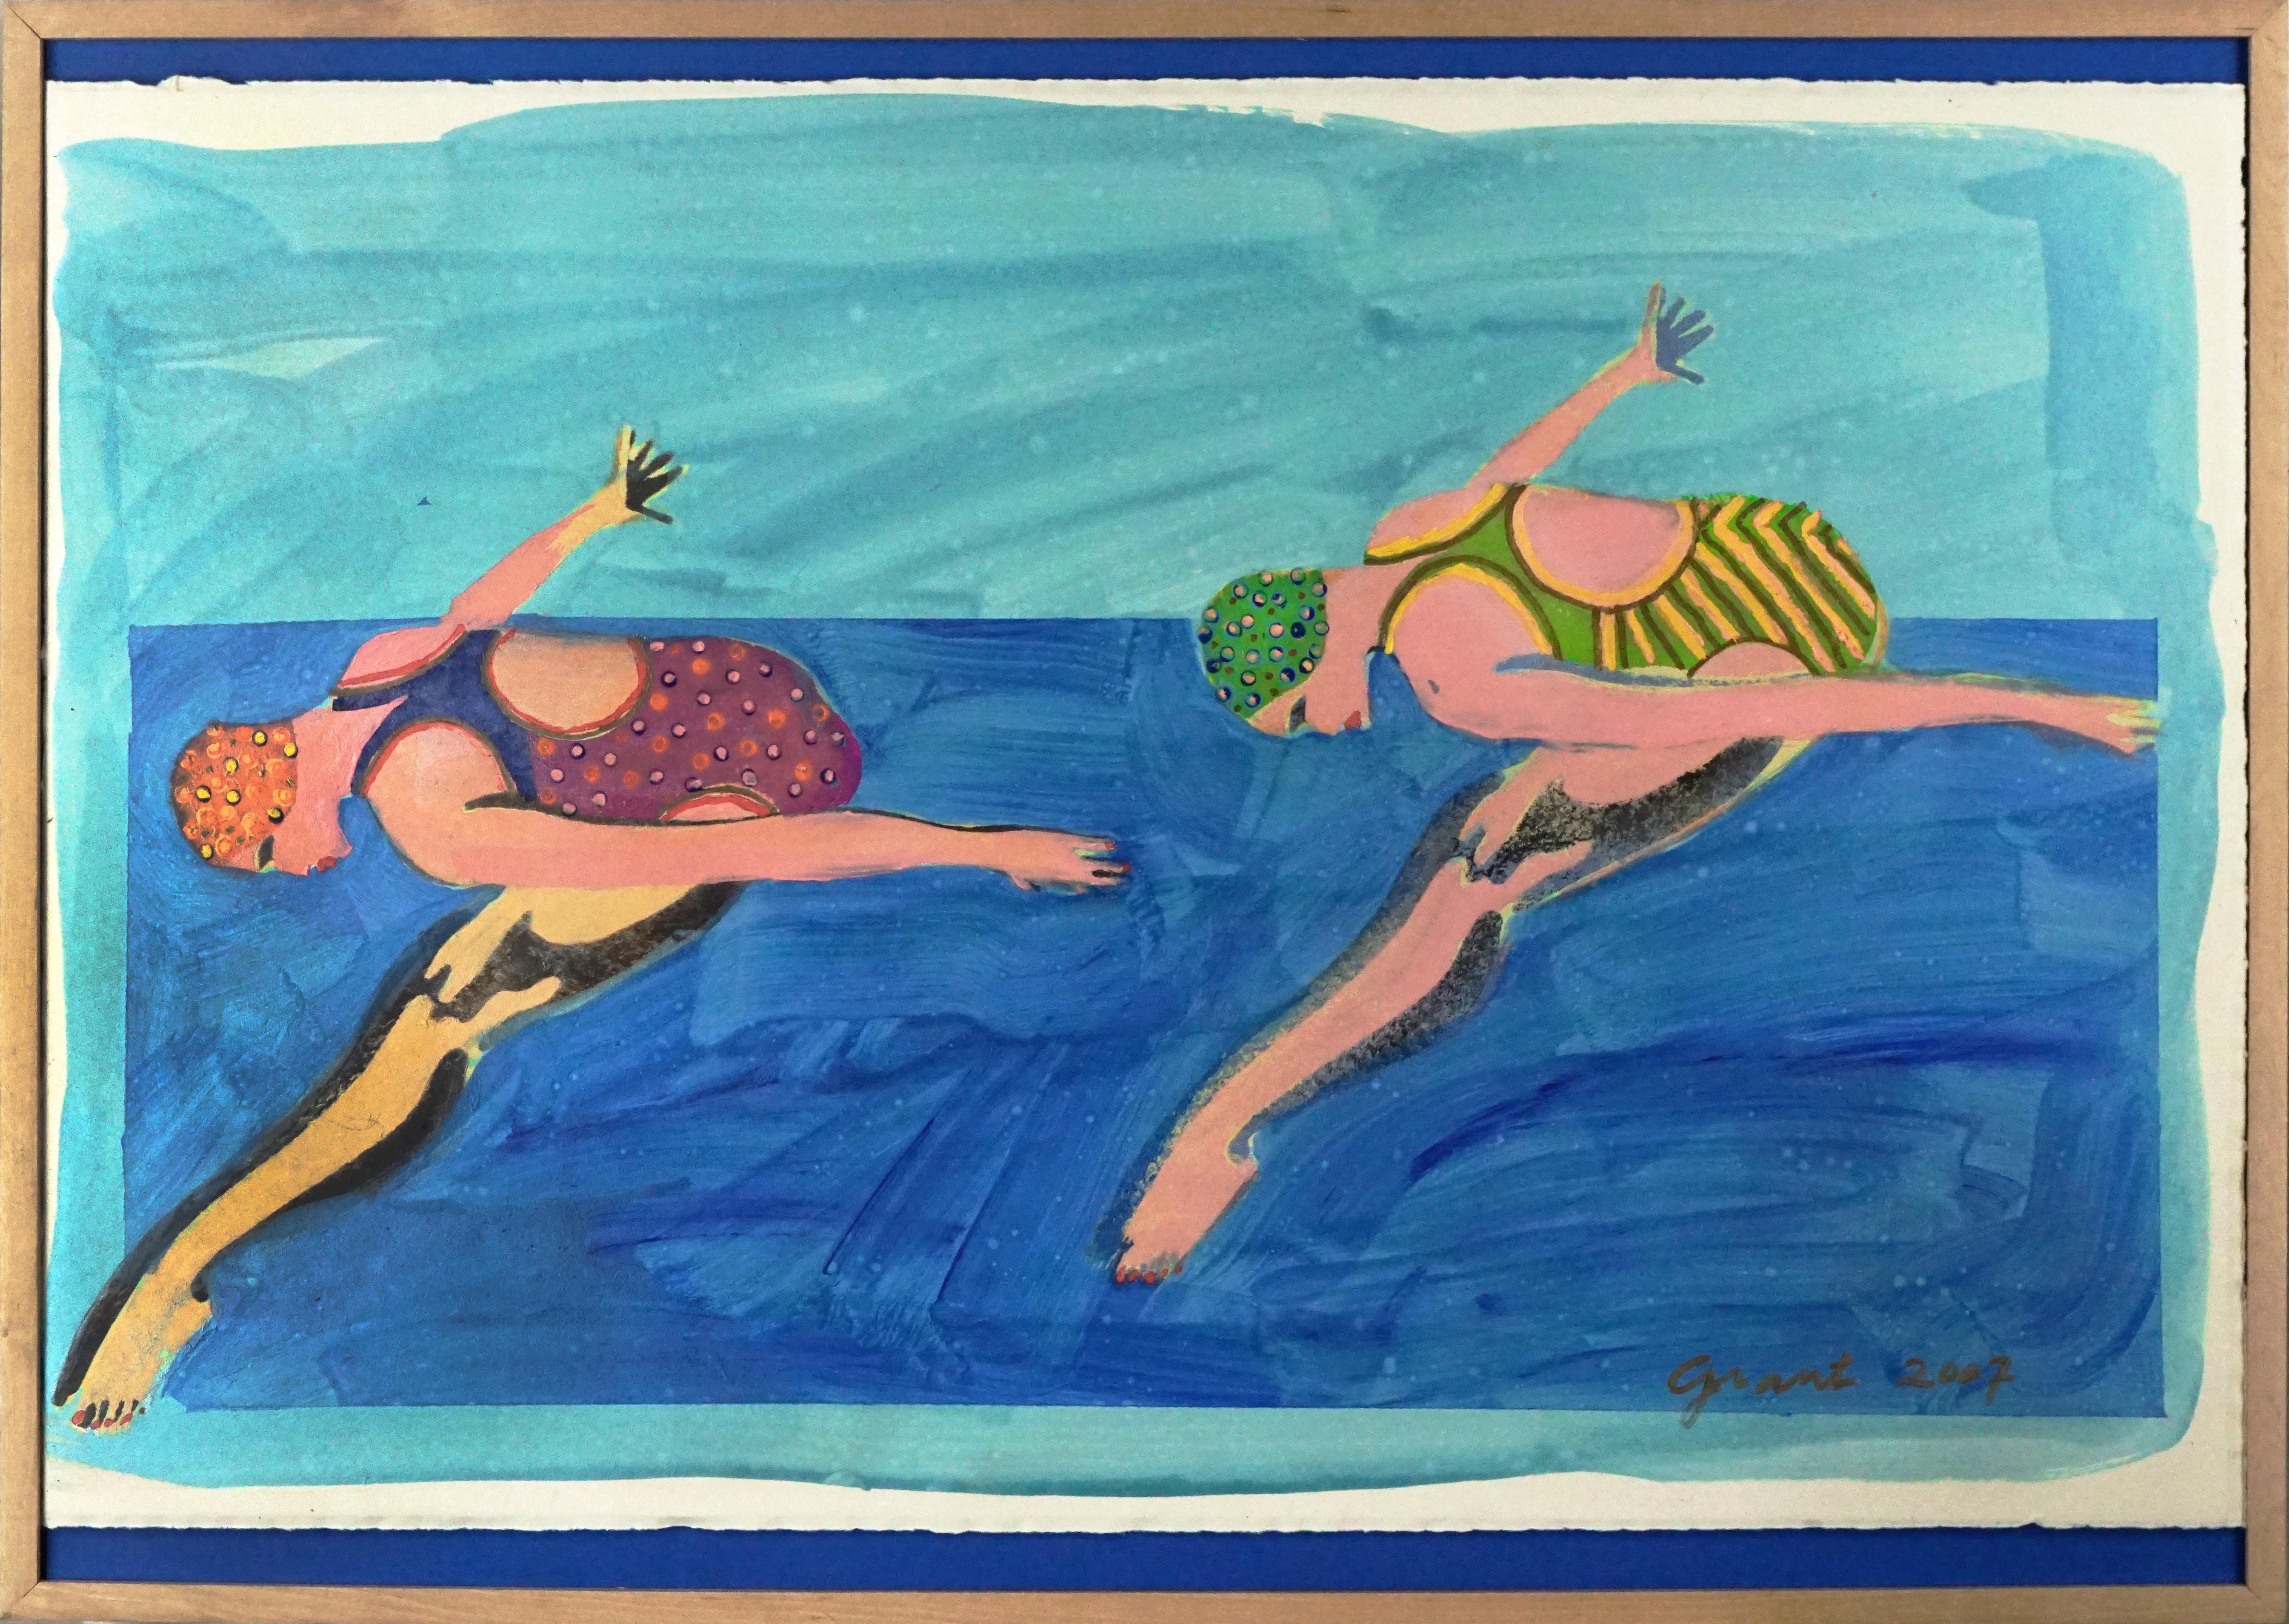 Swimmers synchronisés, abstrait figuratif pop art sur bleu